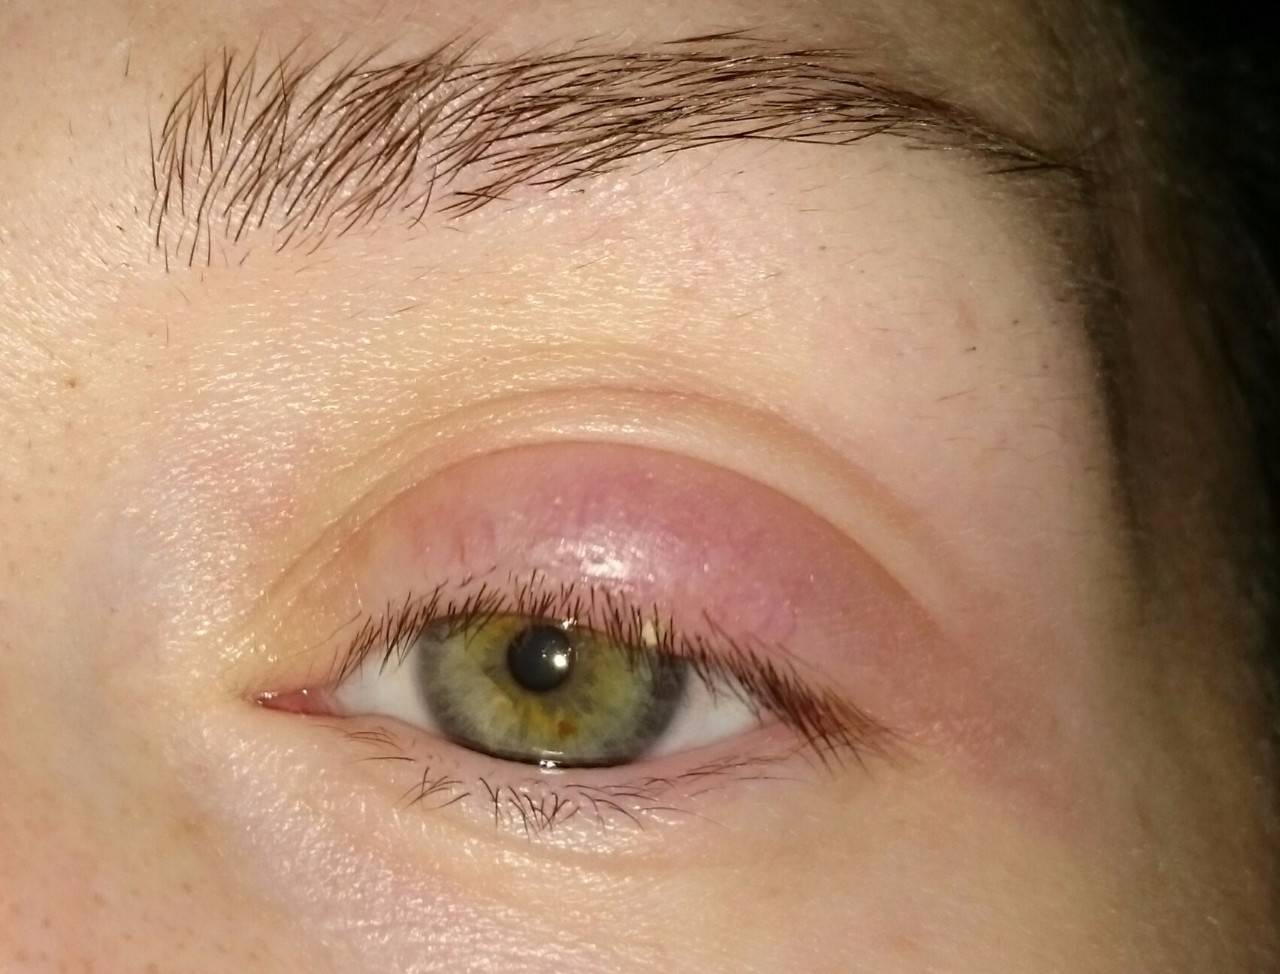 Чем опасен аллергический отек глаз и как его снять?